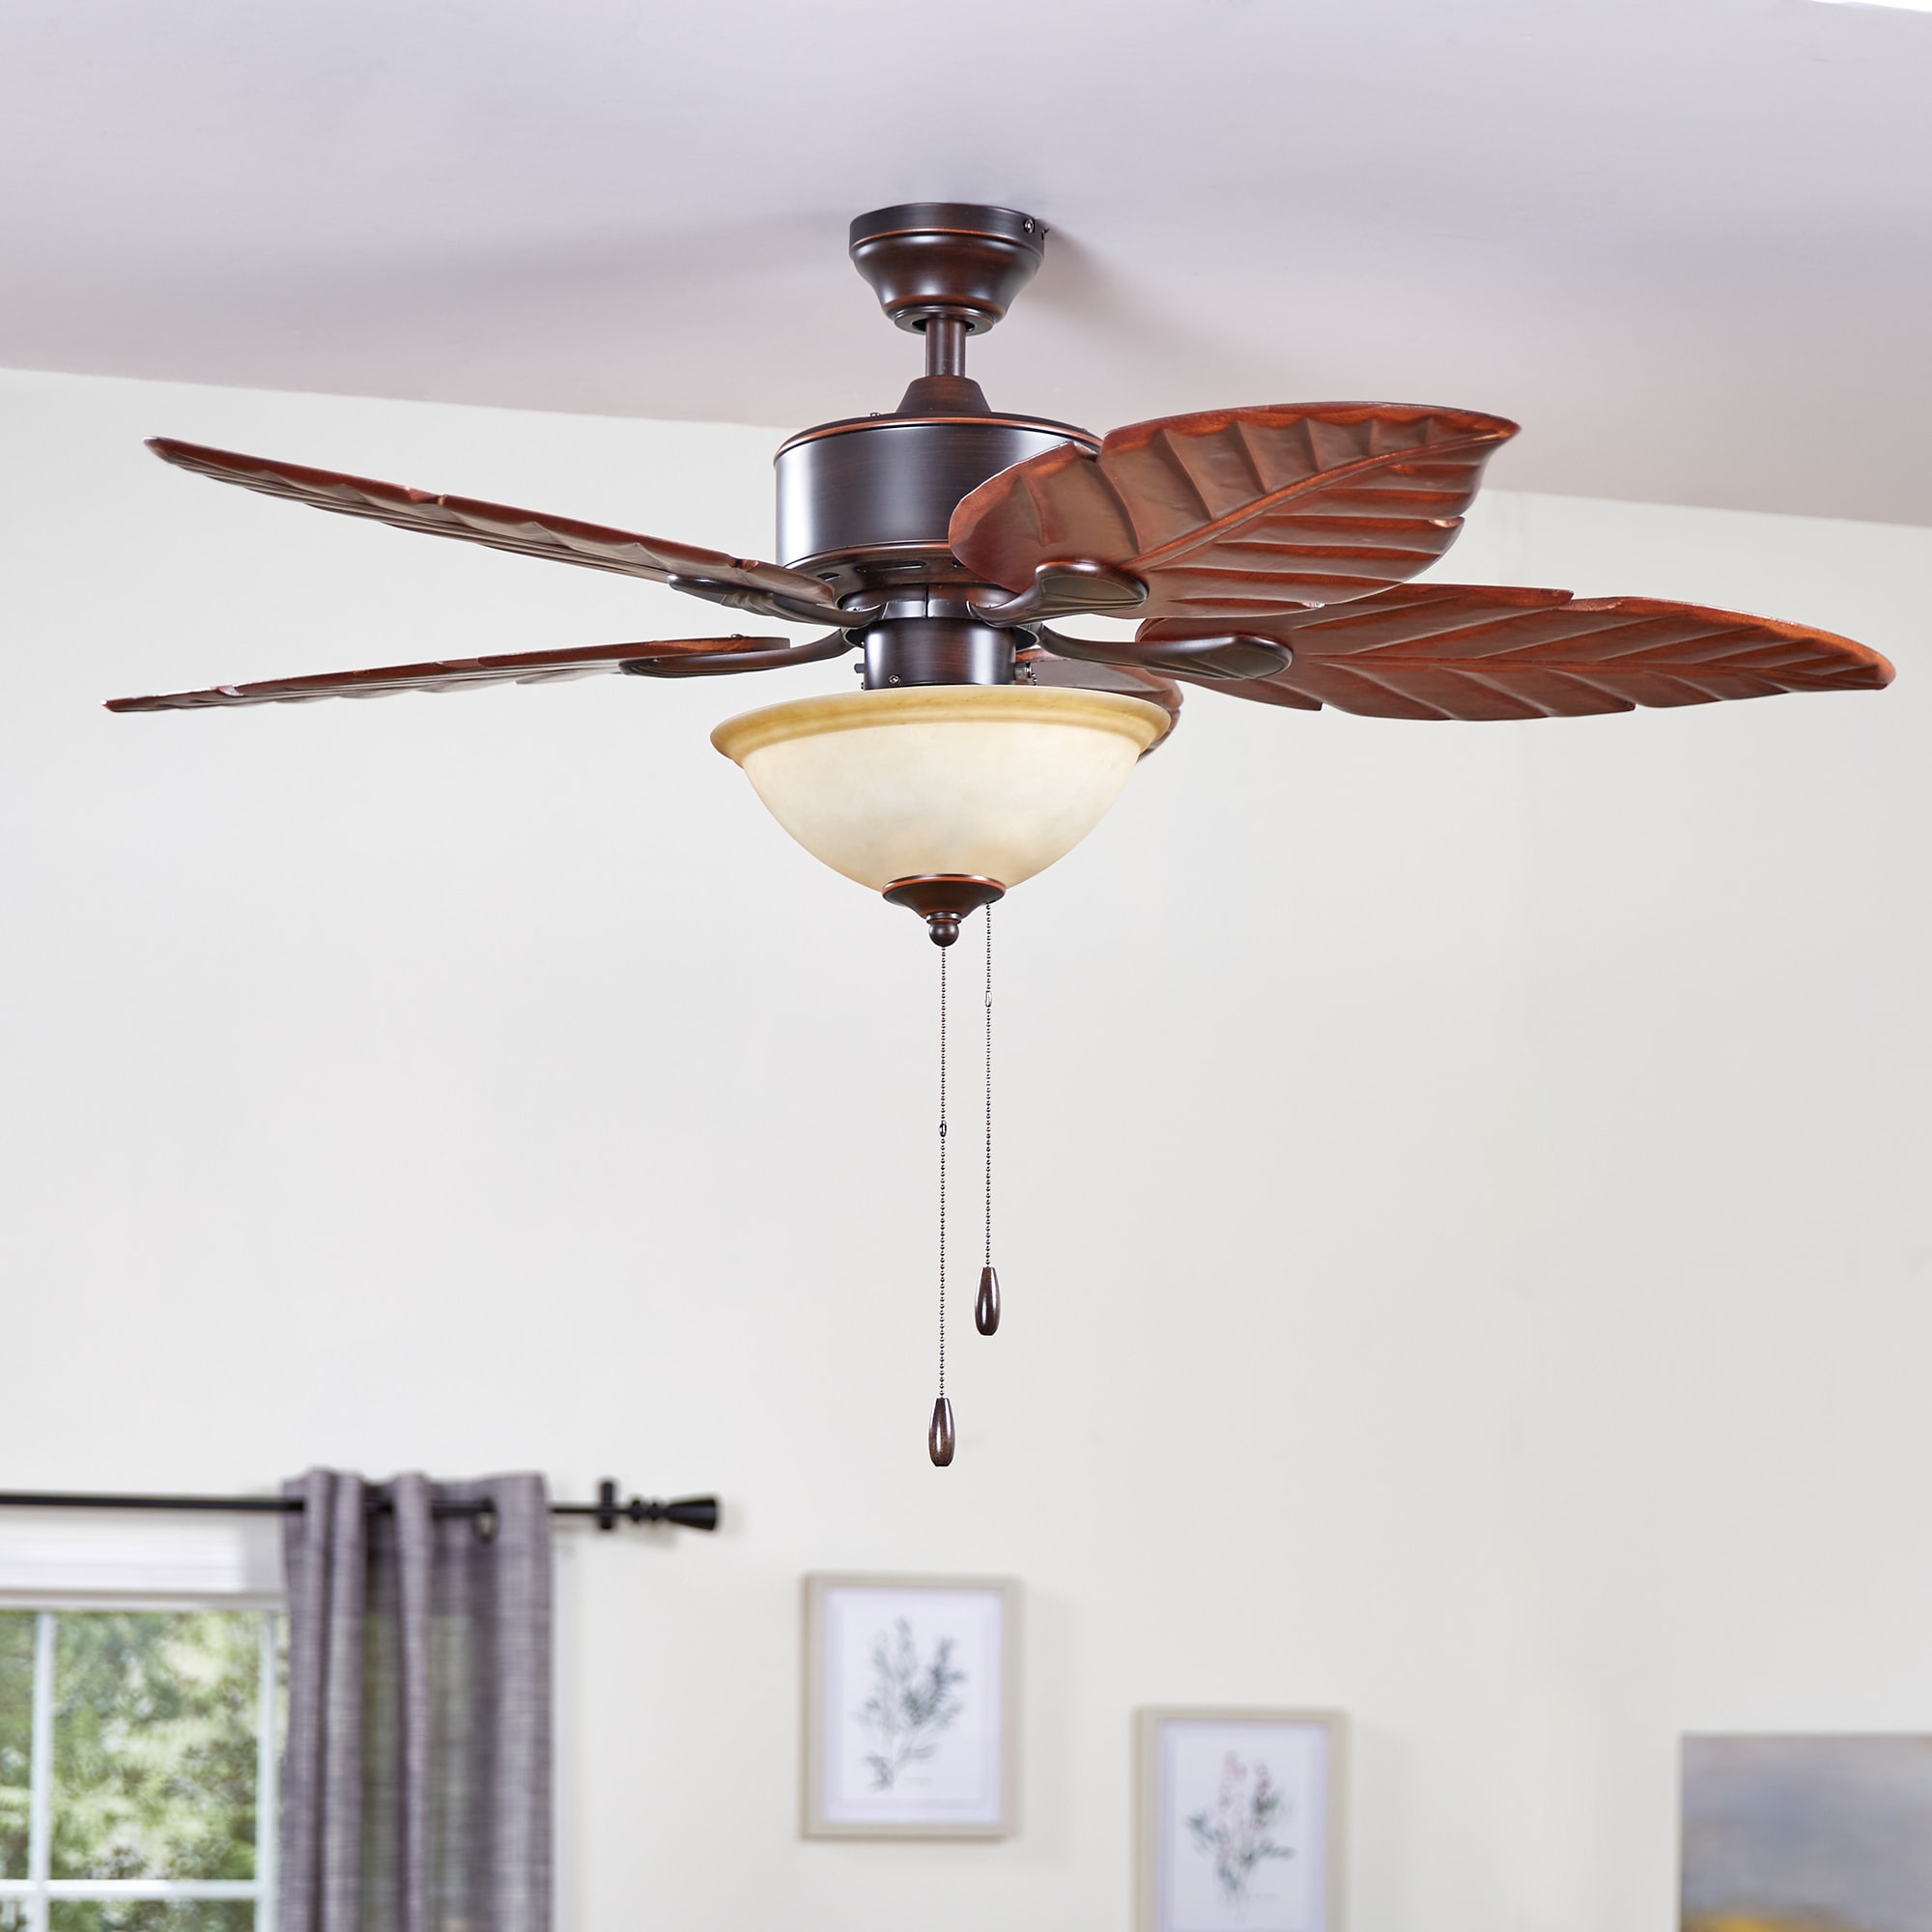 Balf 52'' Ceiling Fan with Light Kit